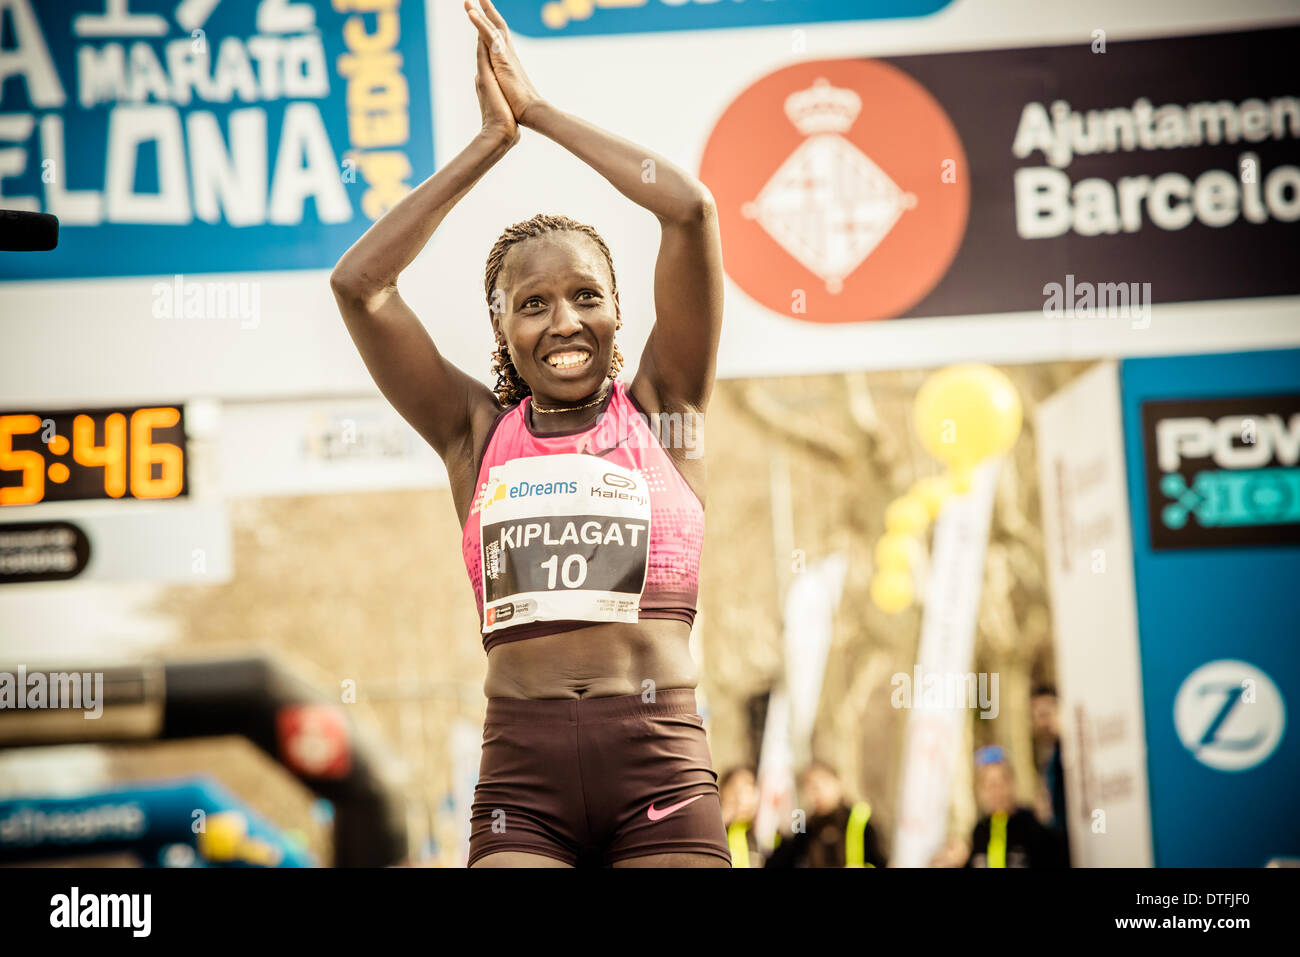 Barcelone, Espagne. 16 février 2014. Du Kenya : Florence Kiplagat Jebet remporte la 24e édition du semi-marathon de Barcelone, établissant un nouveau record du monde en un temps de 1:05:12 © matthi/Alamy Live News Crédit : matthi/Alamy Live News Banque D'Images